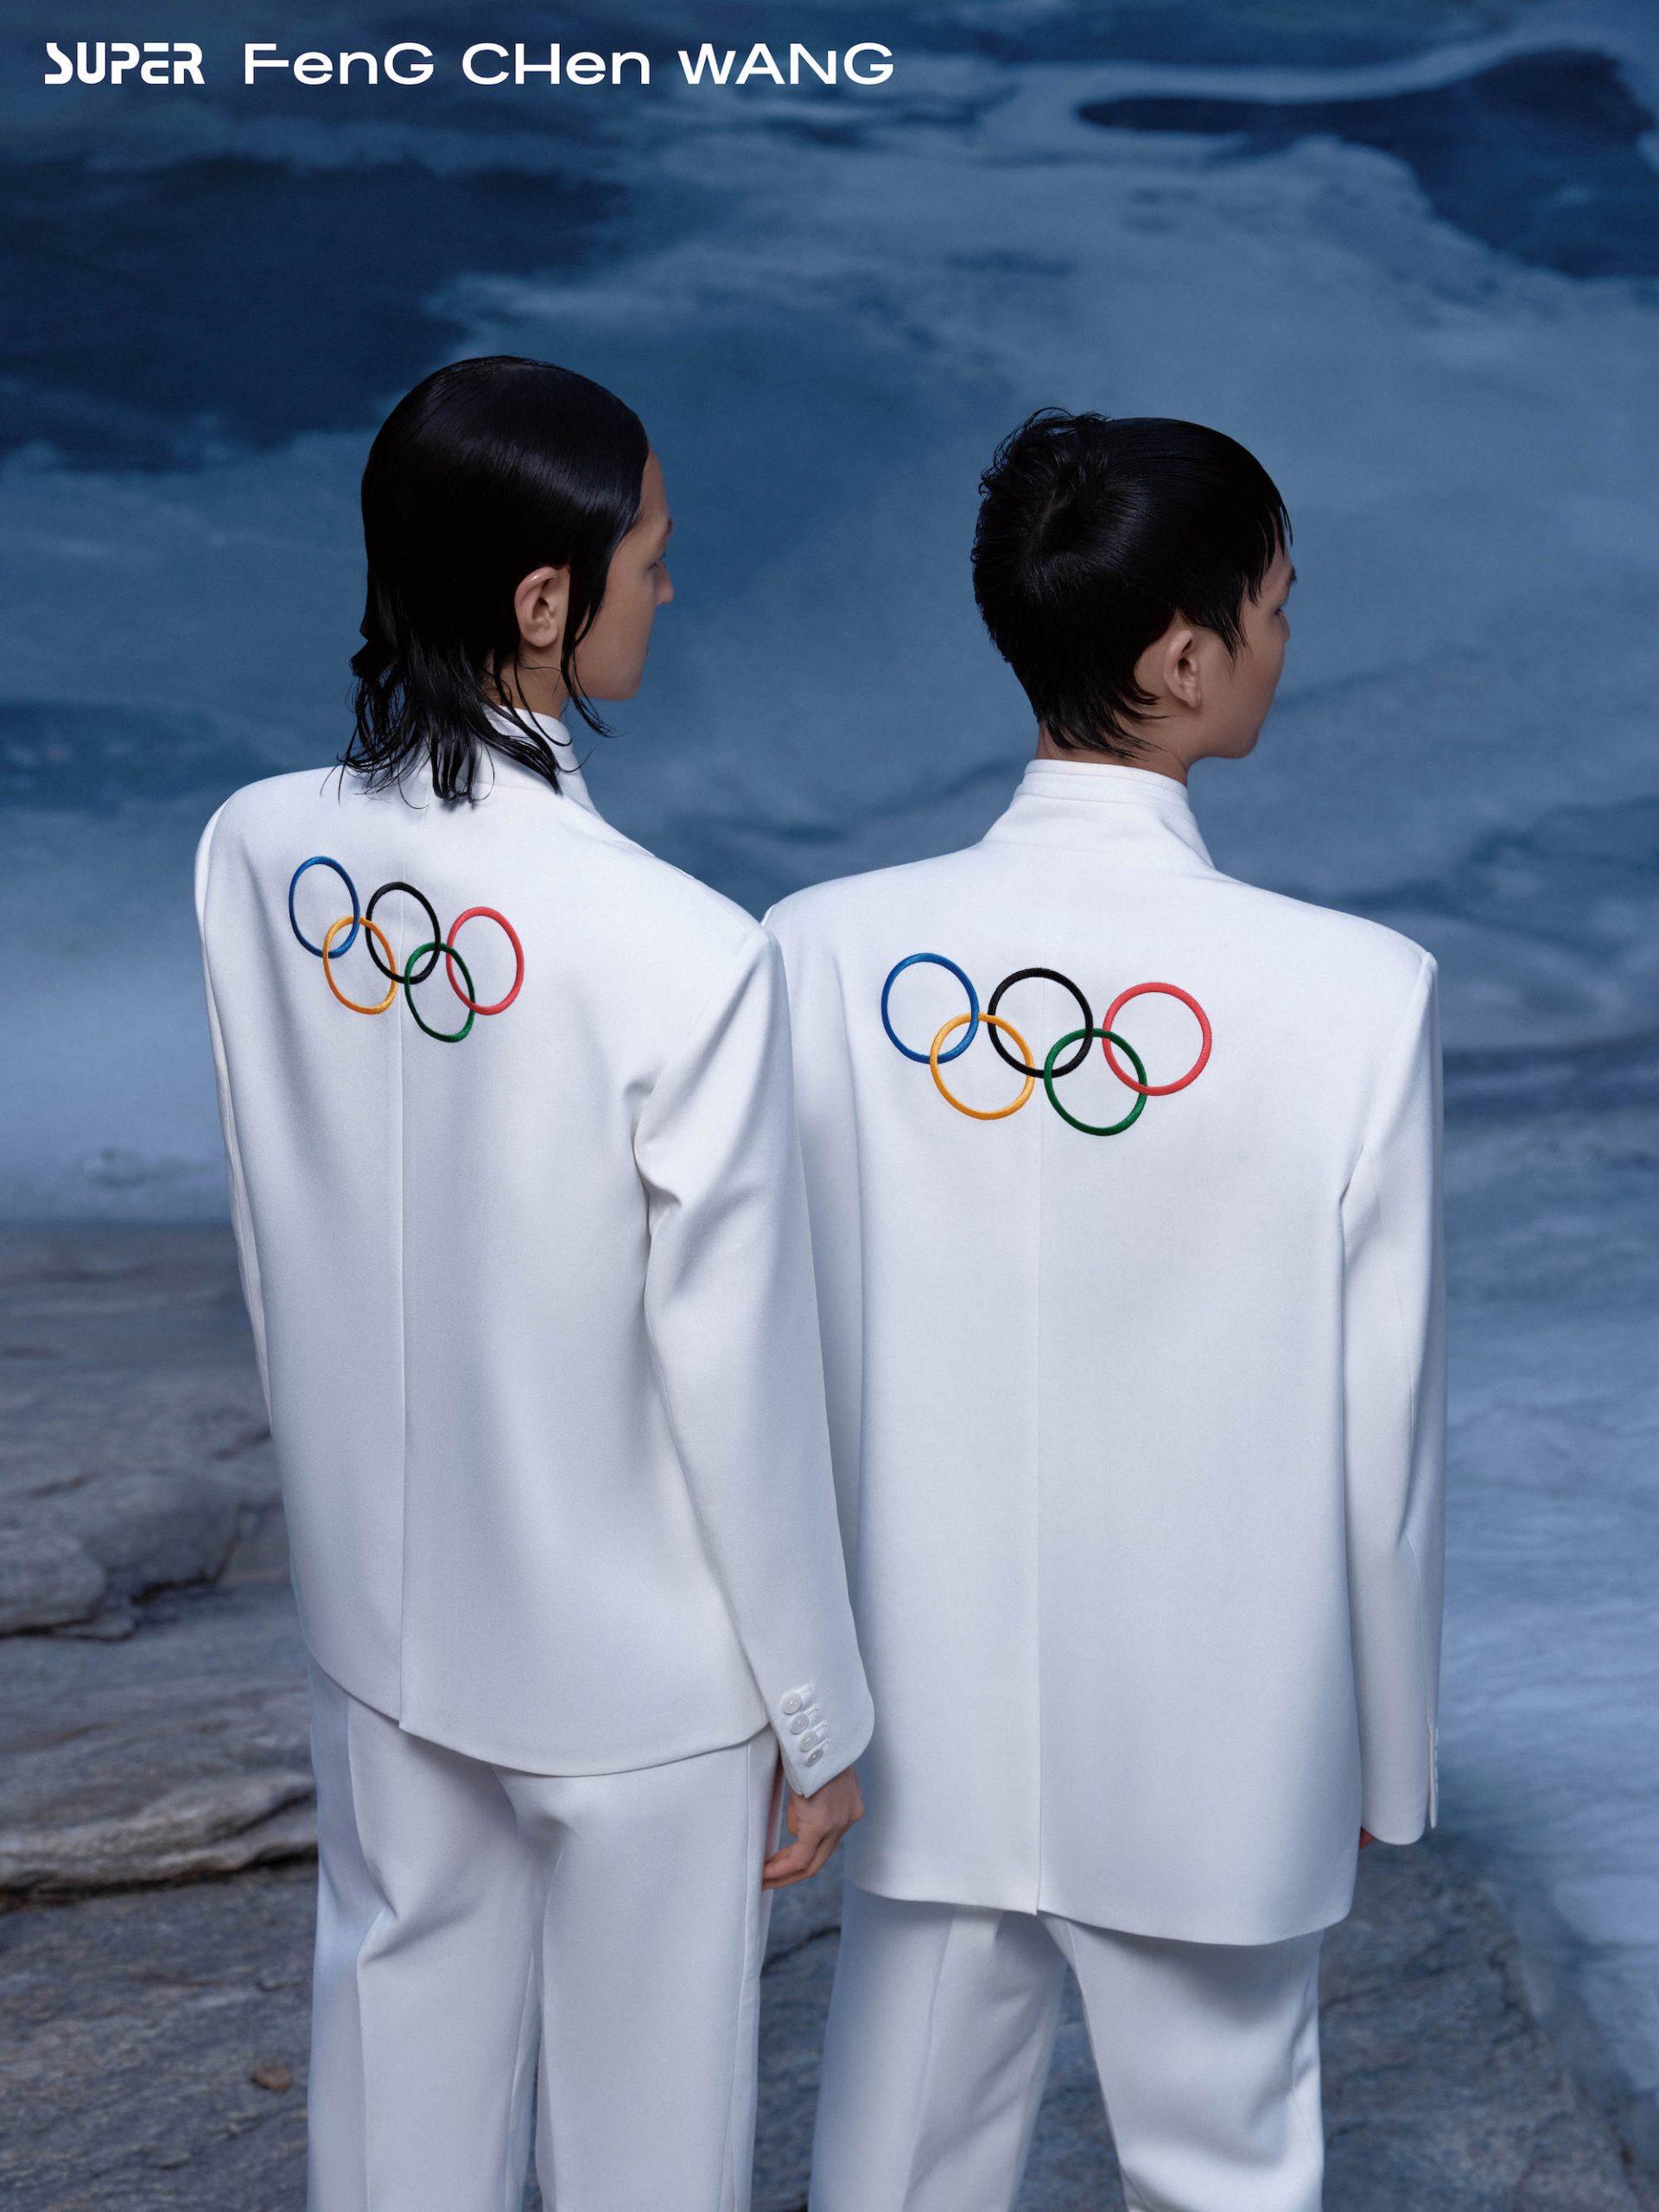 2022冬奥会服装设计图图片